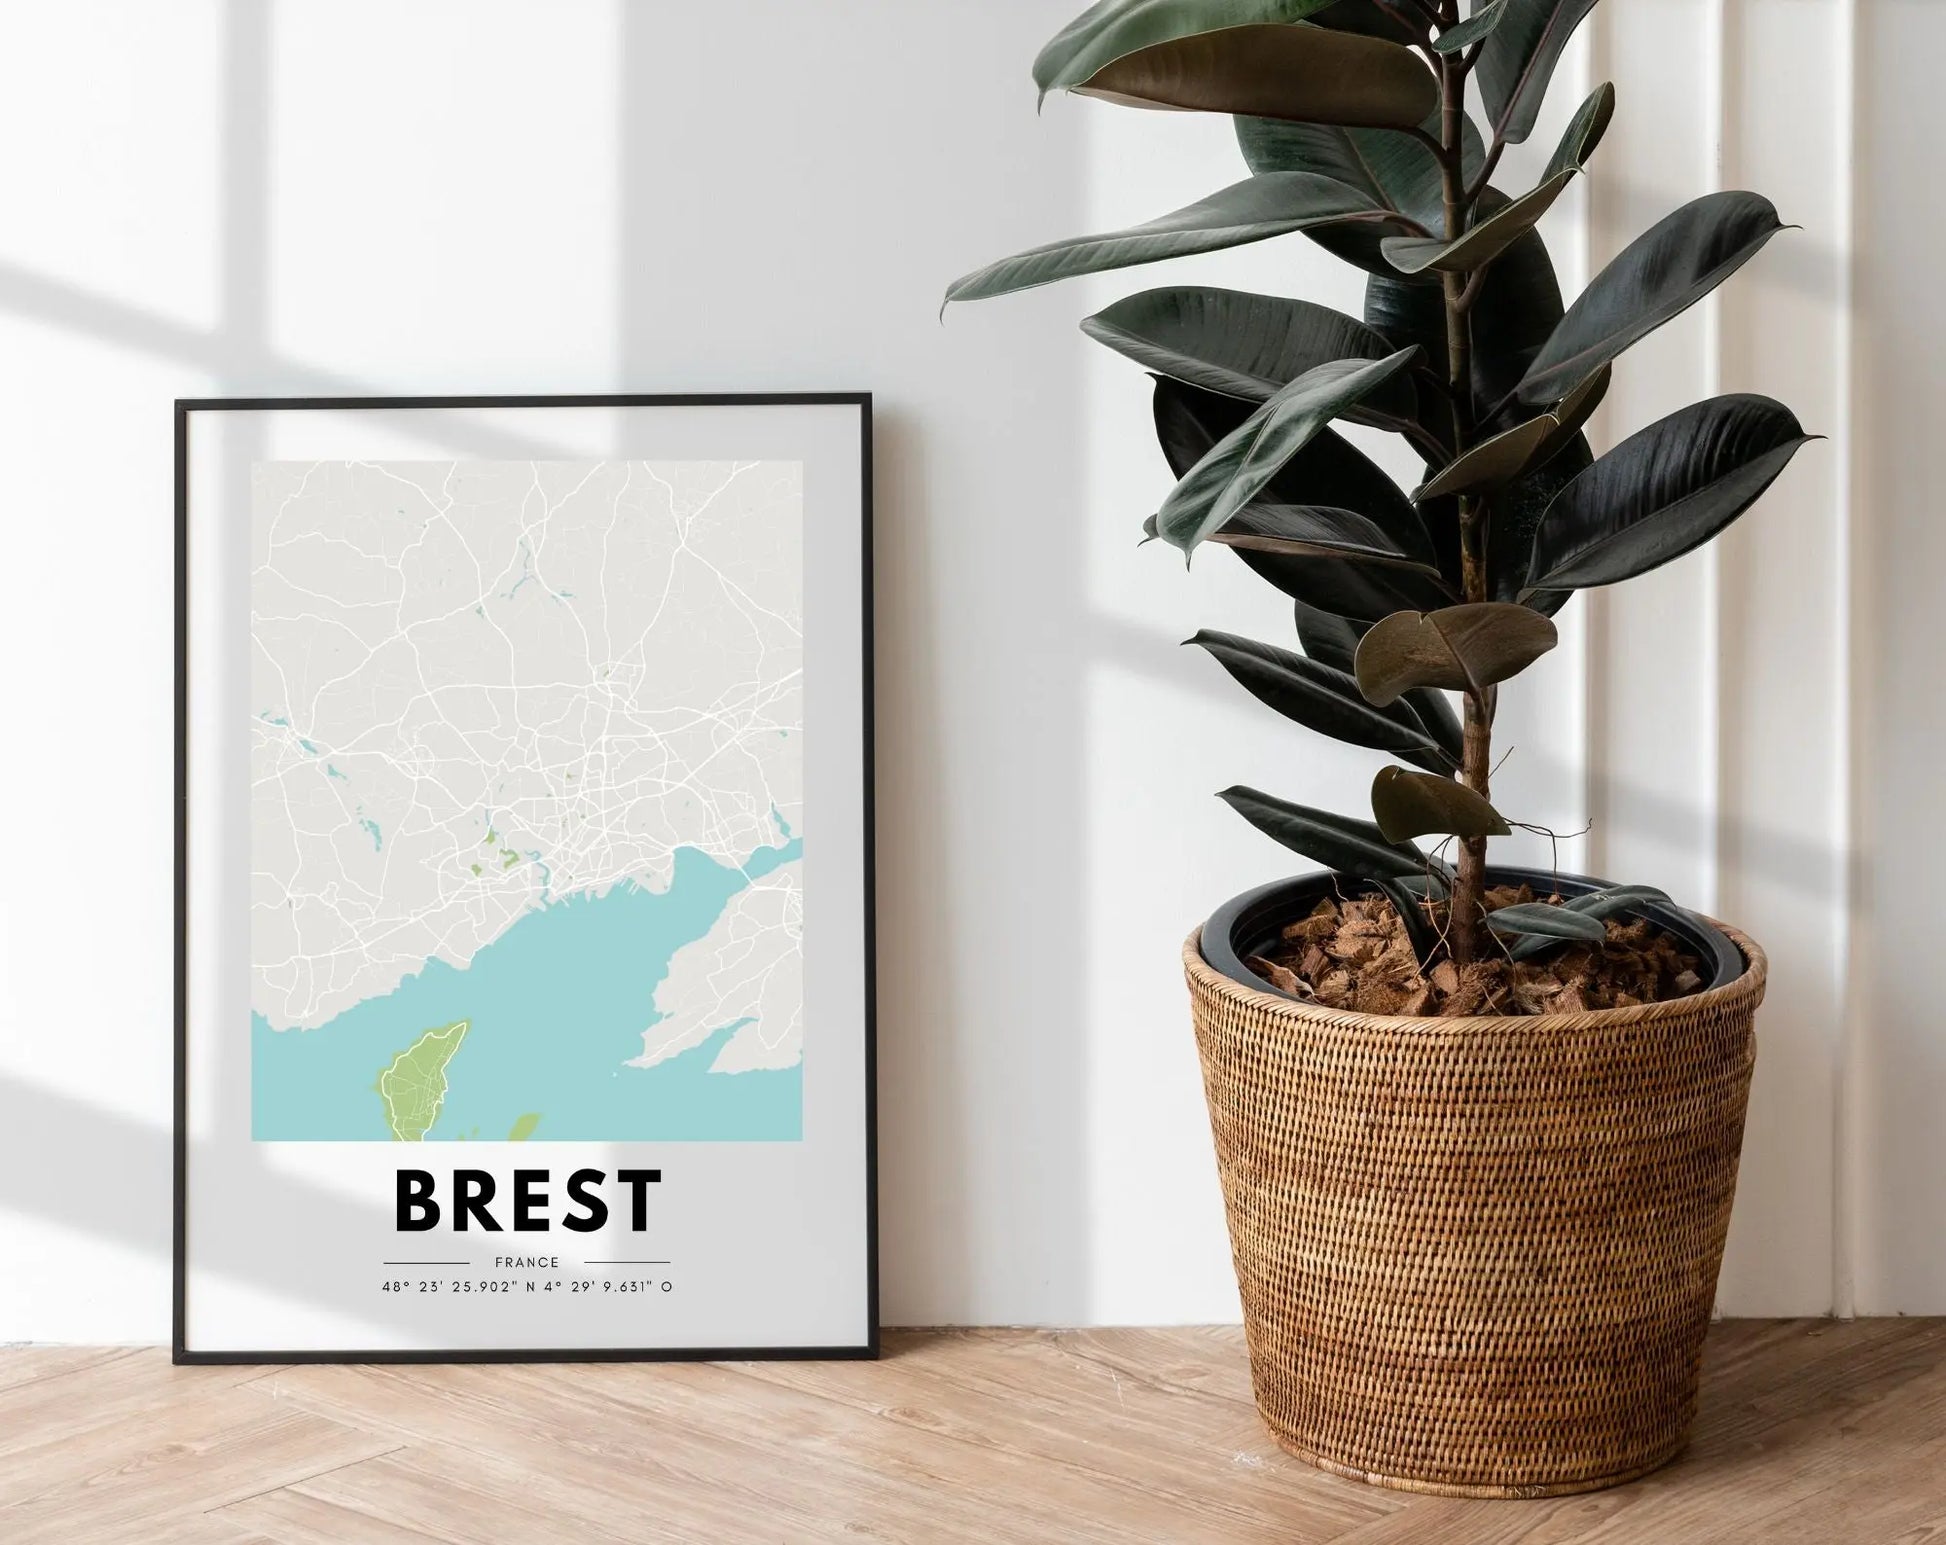 Affiche carte Brest - Villes de France FLTMfrance